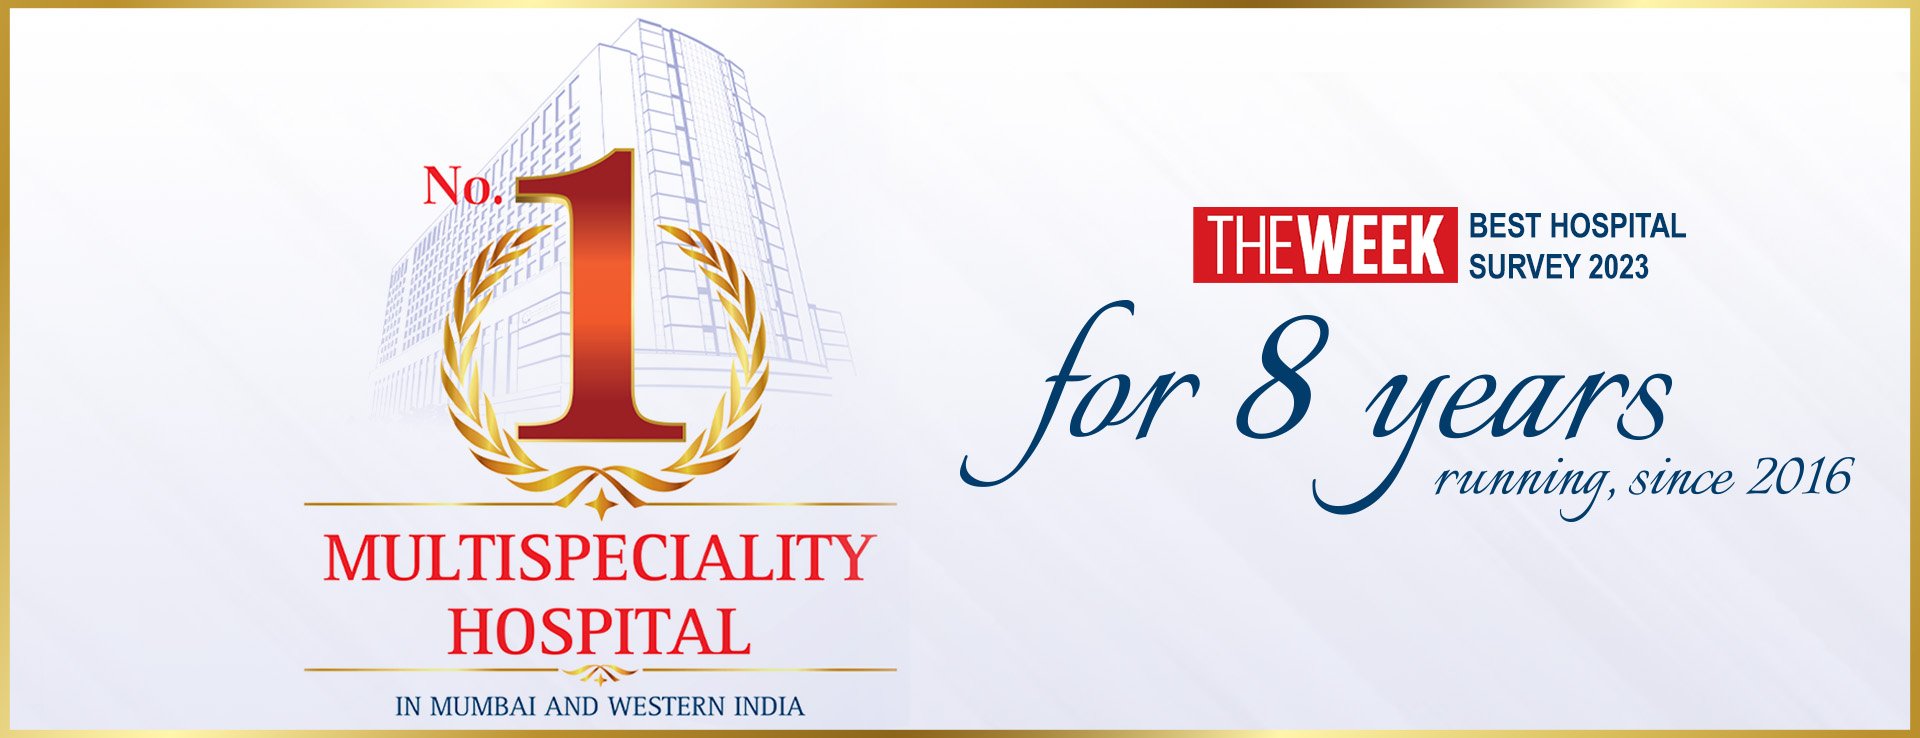 No. 1 Multispeciality Hospital in Mumbai